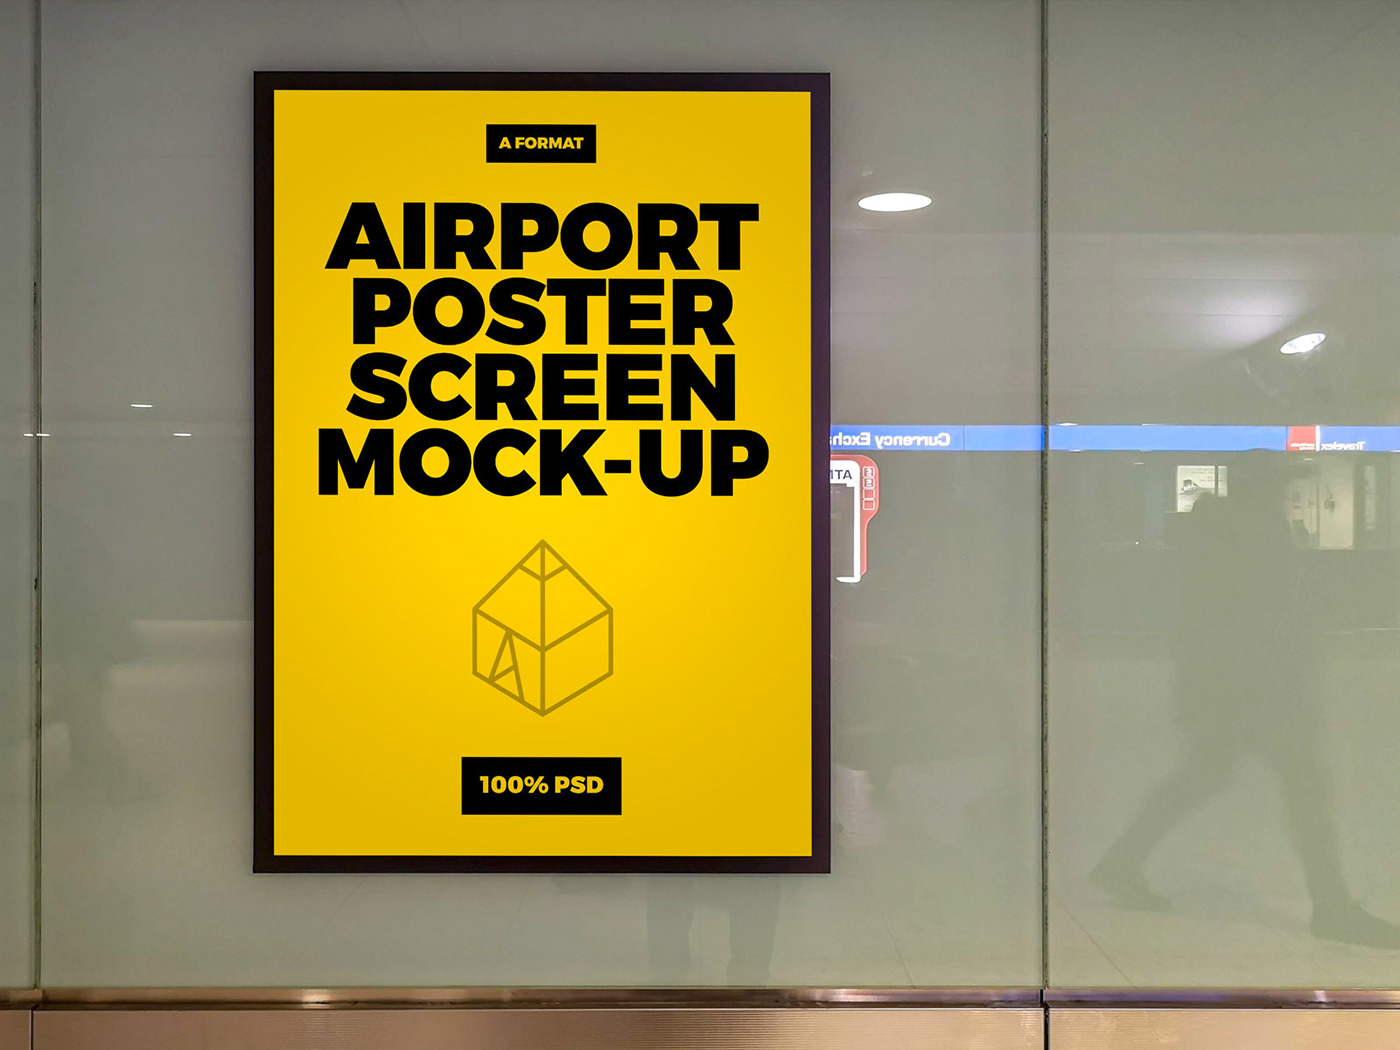 Mockup mock-up poster design screen airport terinal Display free freebie